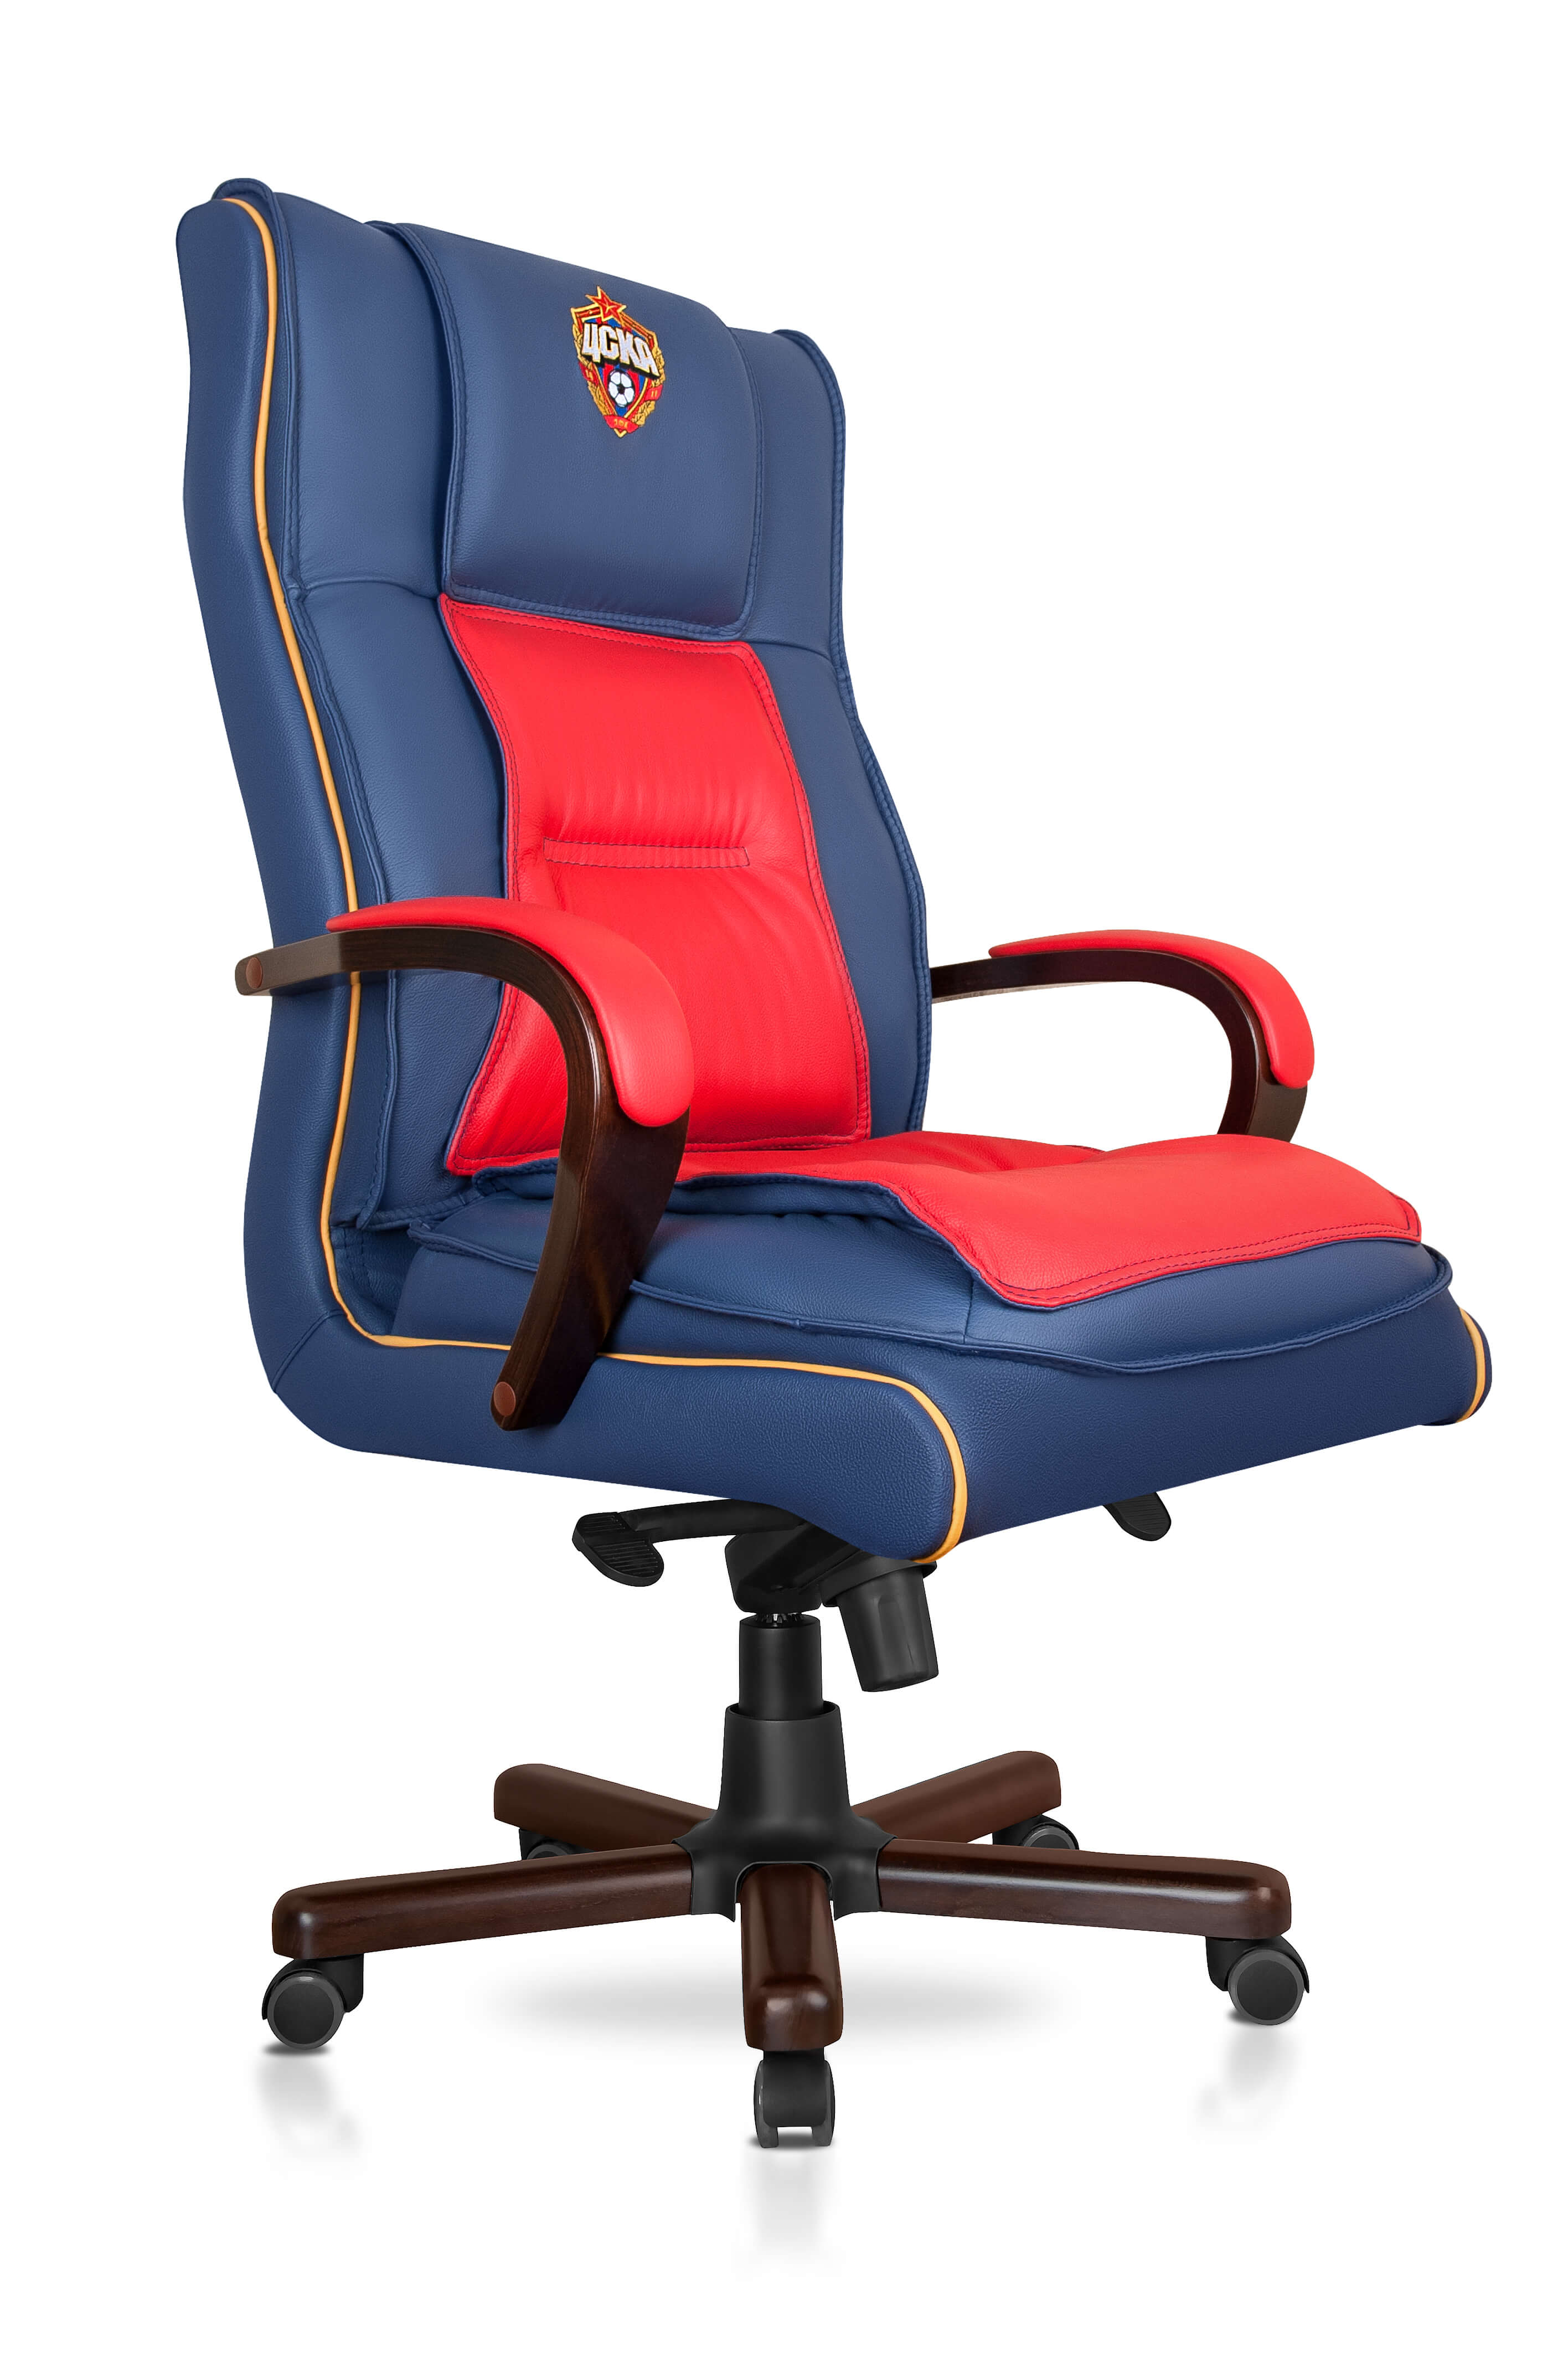 Кресло офисное красно-синее с эмблемой ПФК ЦСКА из натуральной кожи от Cskashop